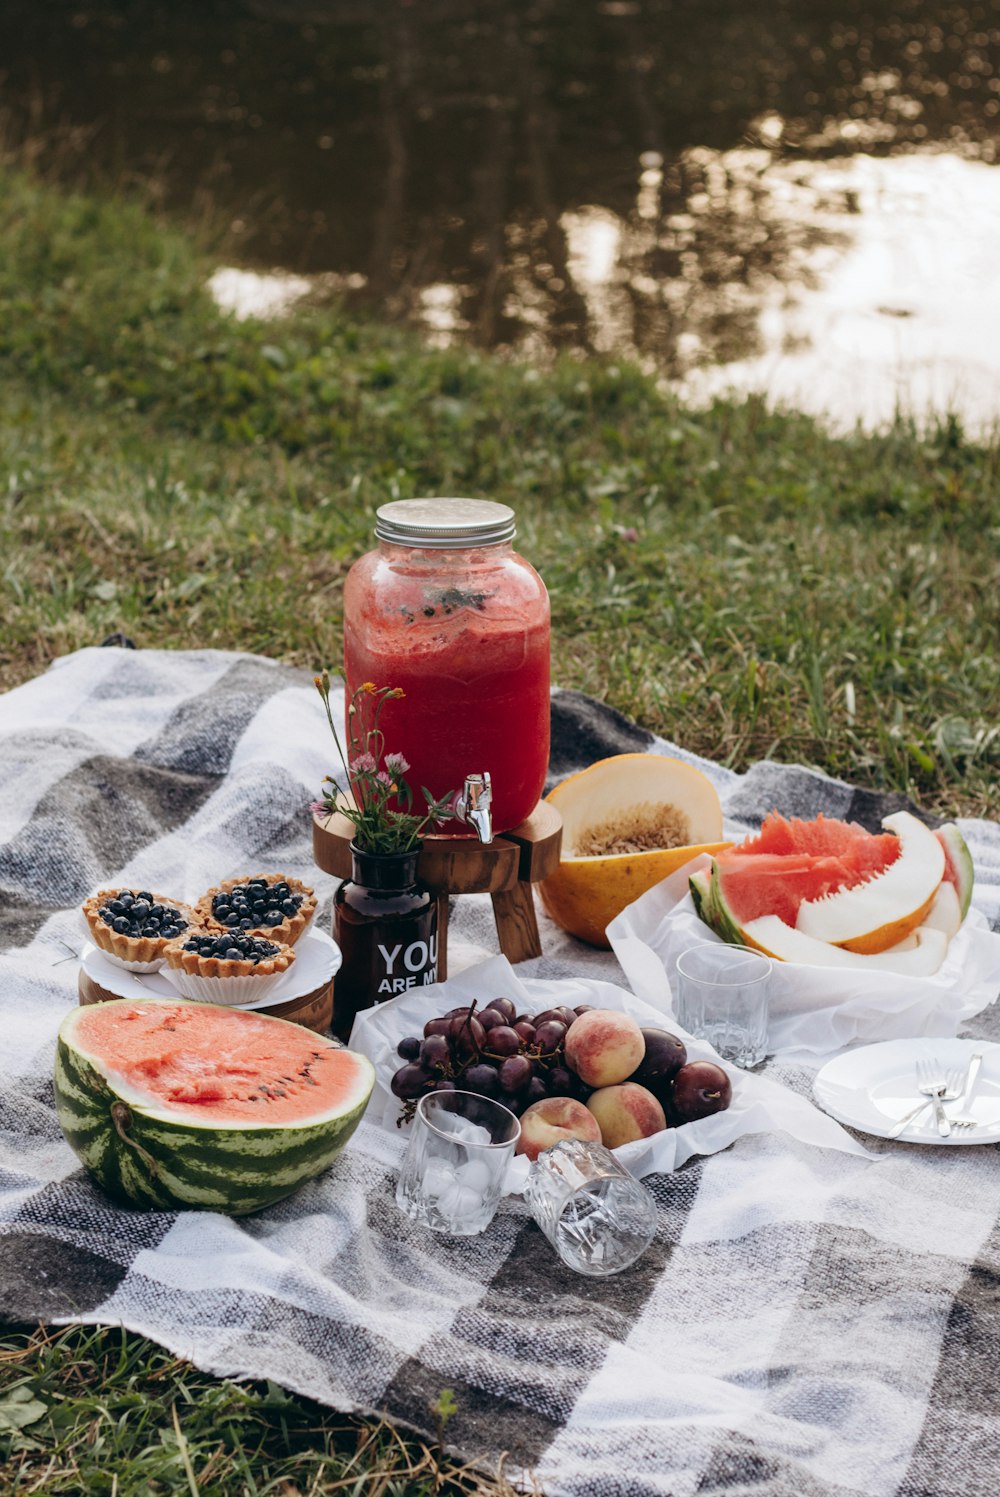 スイカ、ブドウ、メロン、そして瓶のピクニック